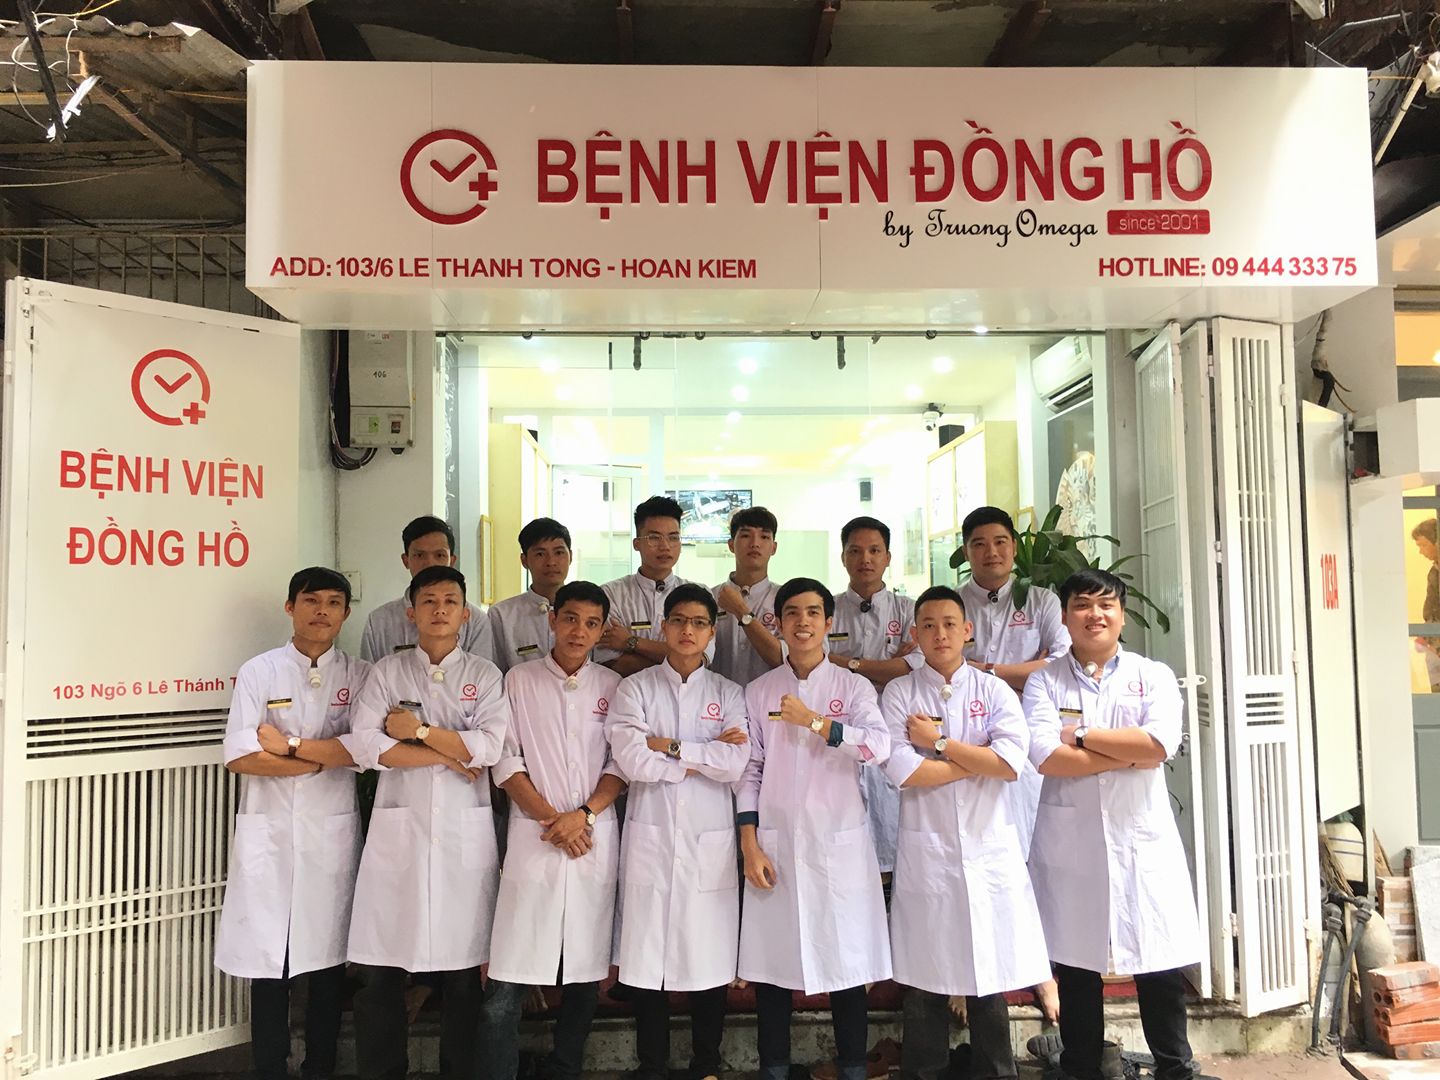 Bệnh Viện Đồng Hồ - Cửa hàng sửa chữa đồng hồ tại Hà Nội